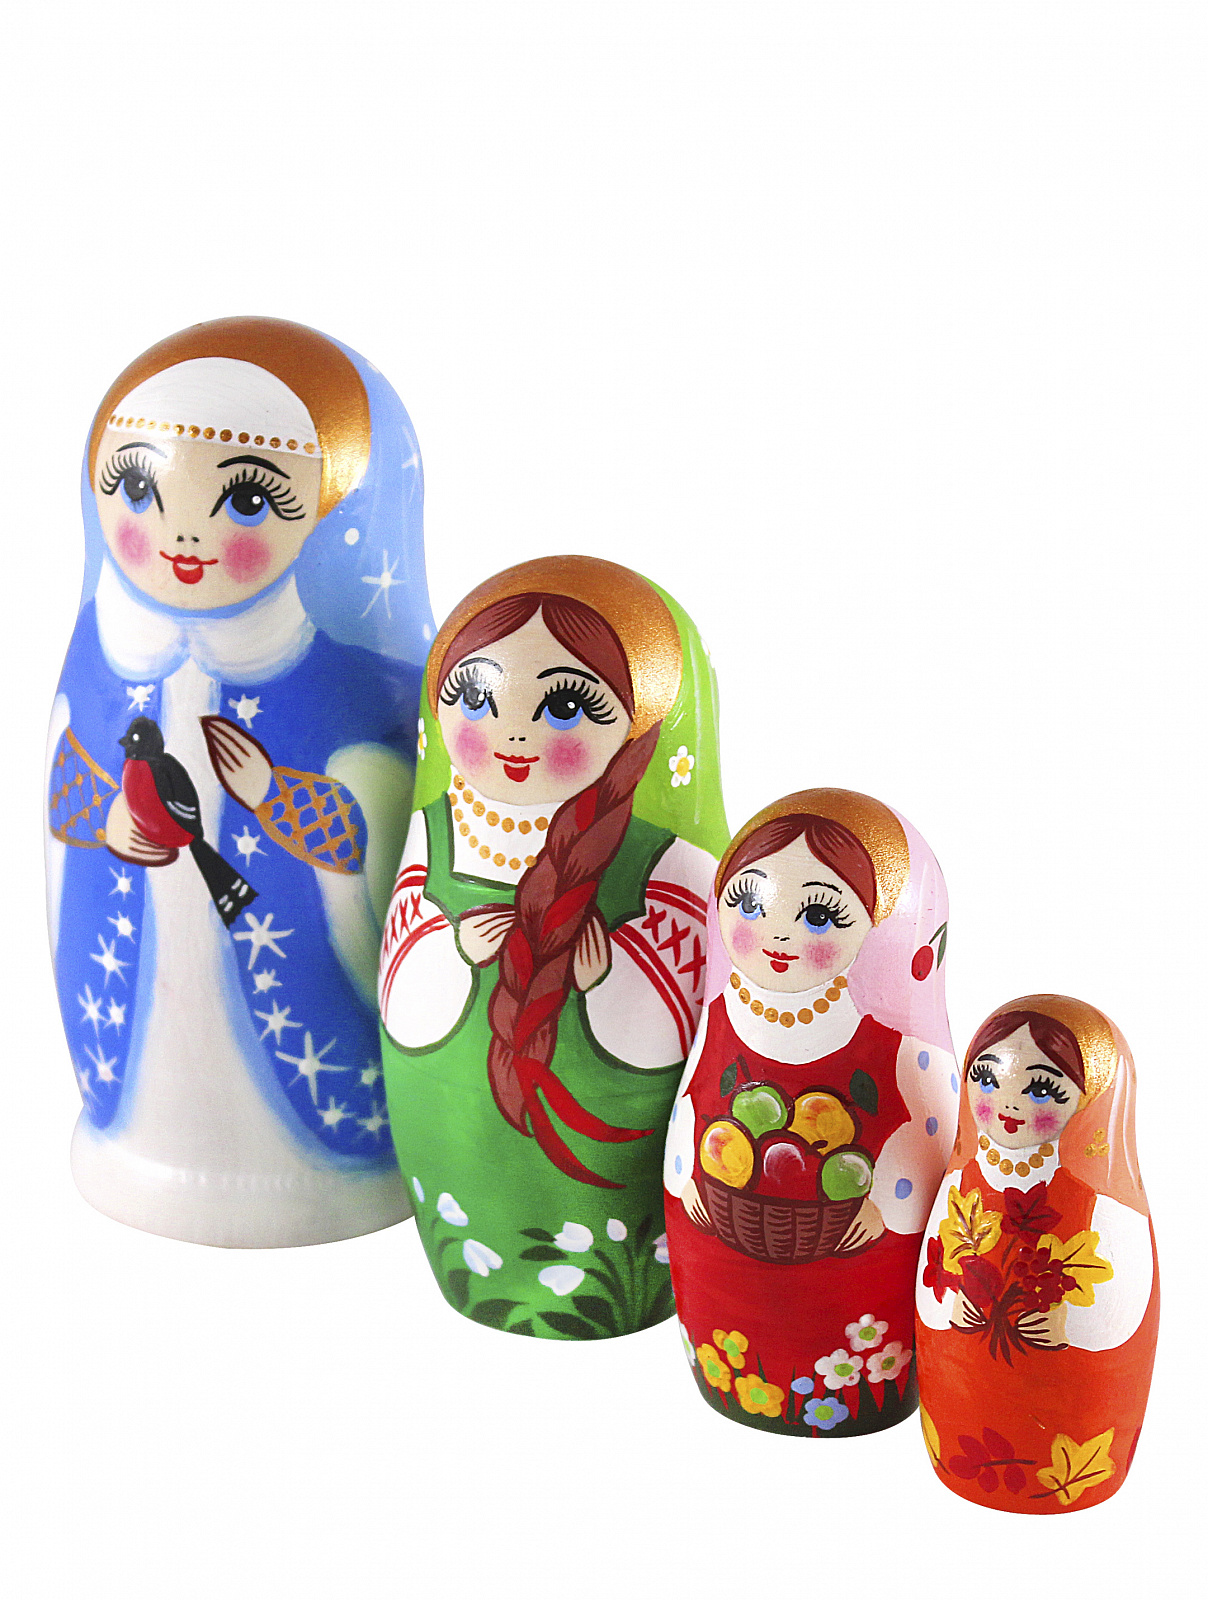 Хохлома Матрешка 4 куклы (Высшая категория) 80036000000